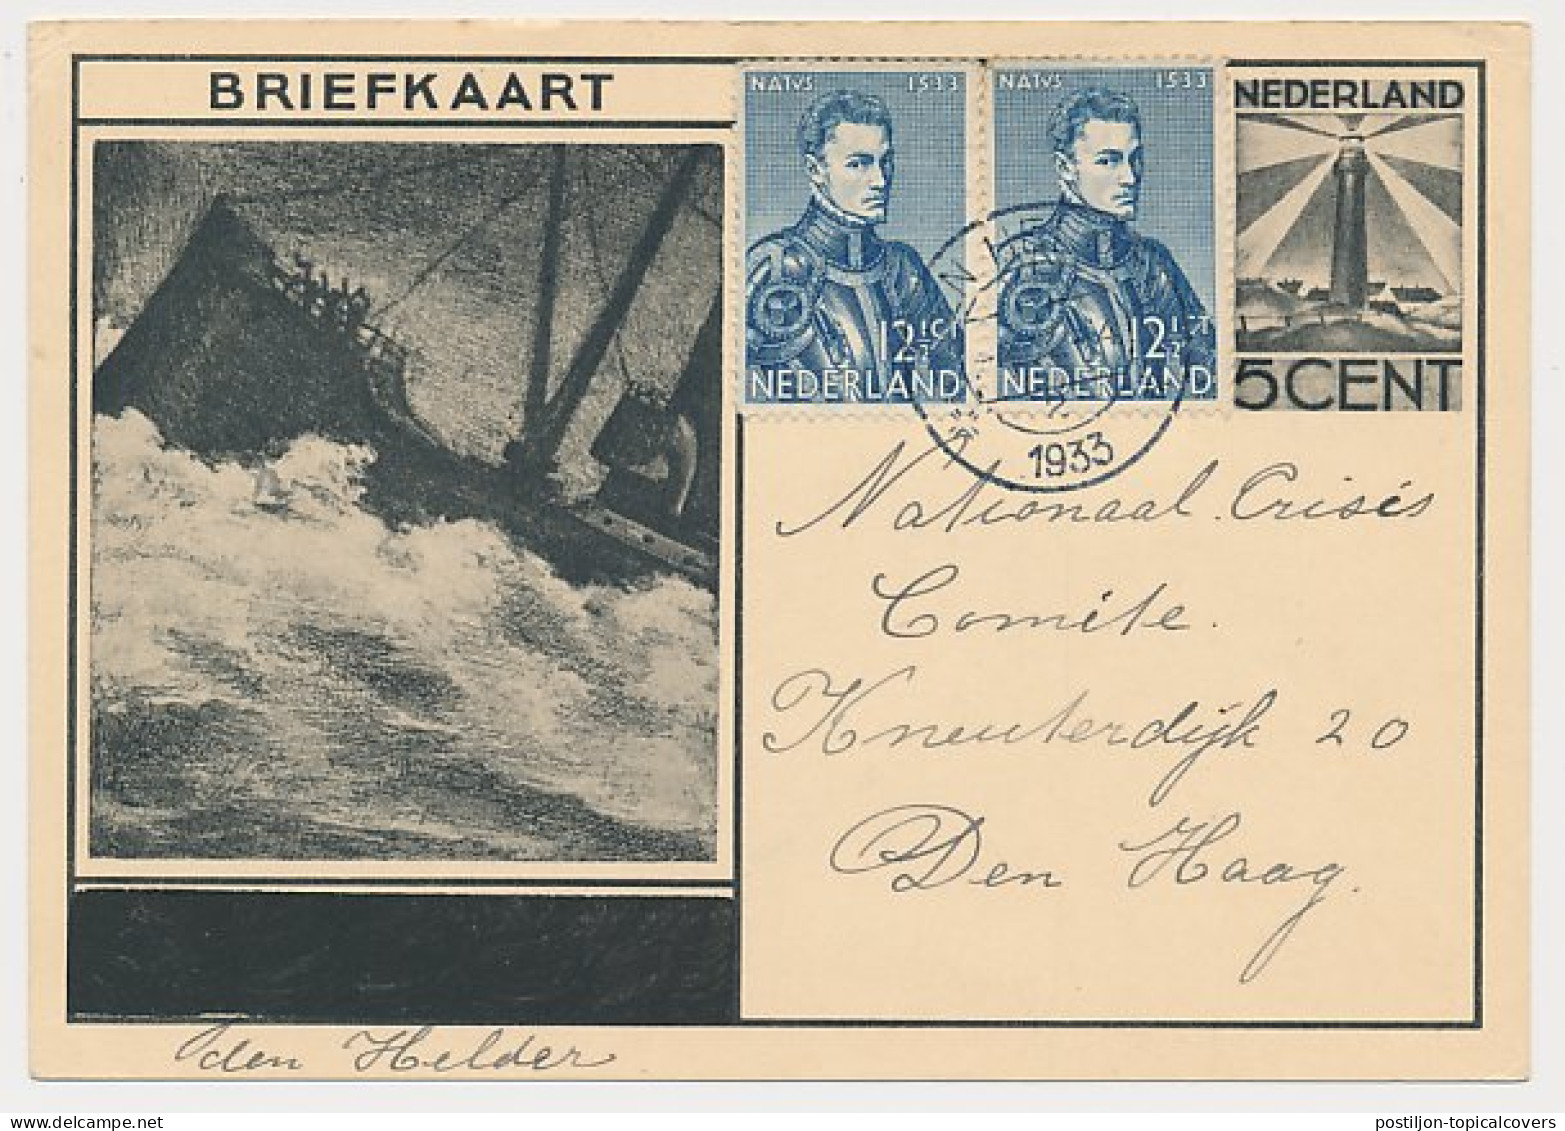 Briefkaart G. 234 Den Helder - S Gravenhage 1933 - Entiers Postaux